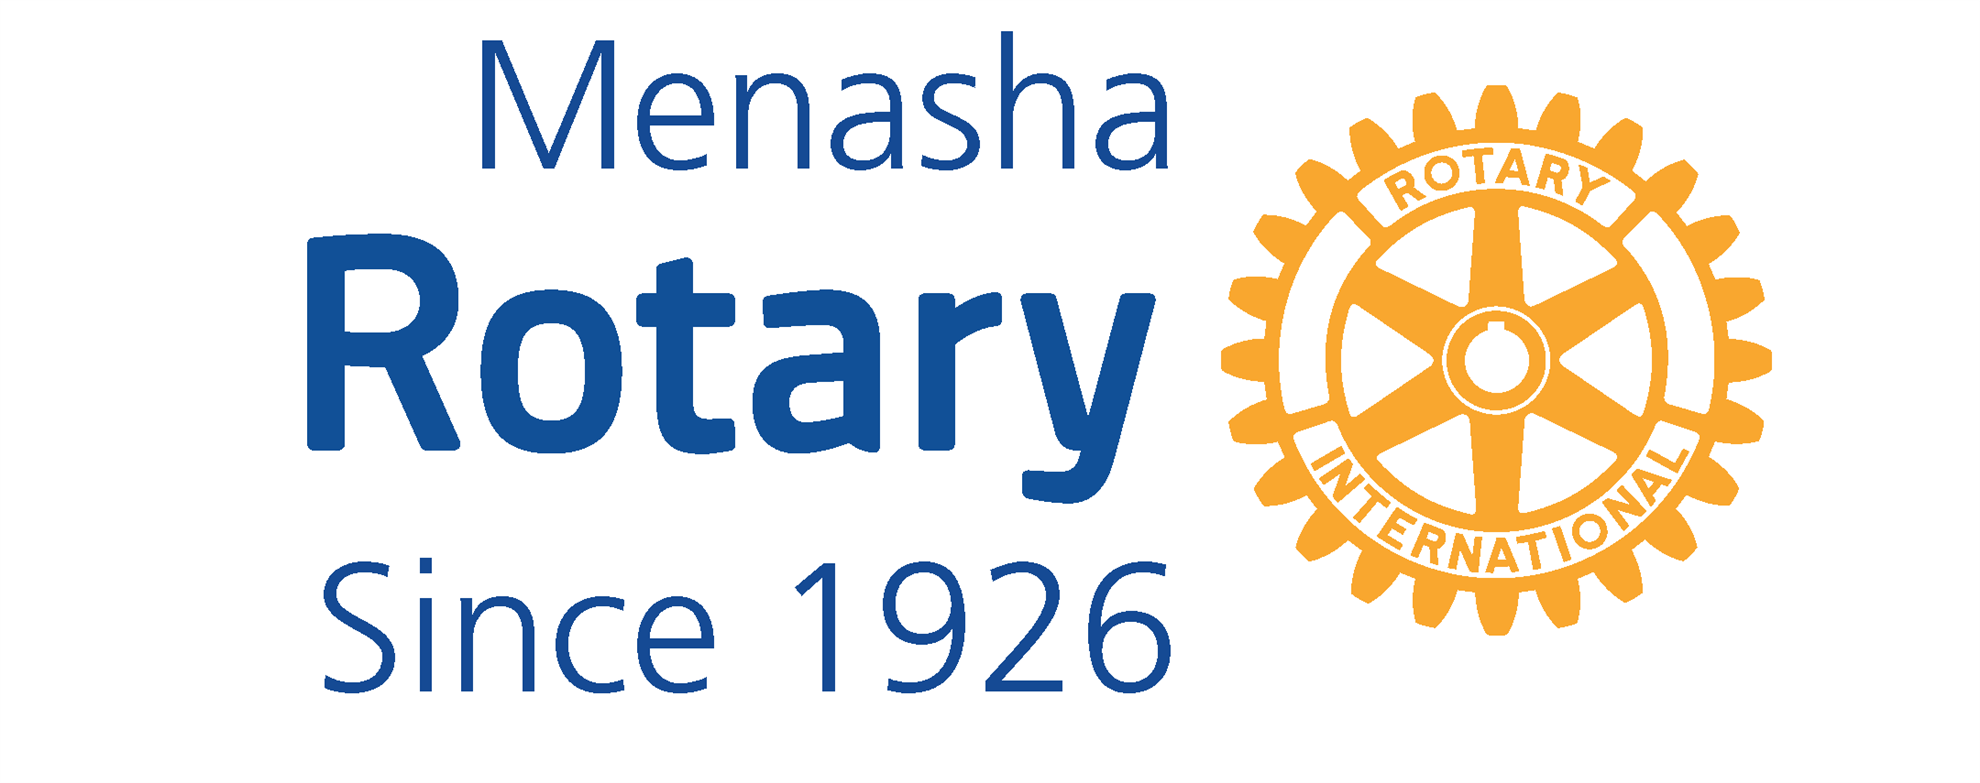 Menasha Logo - Home Page. Rotary Club of Menasha